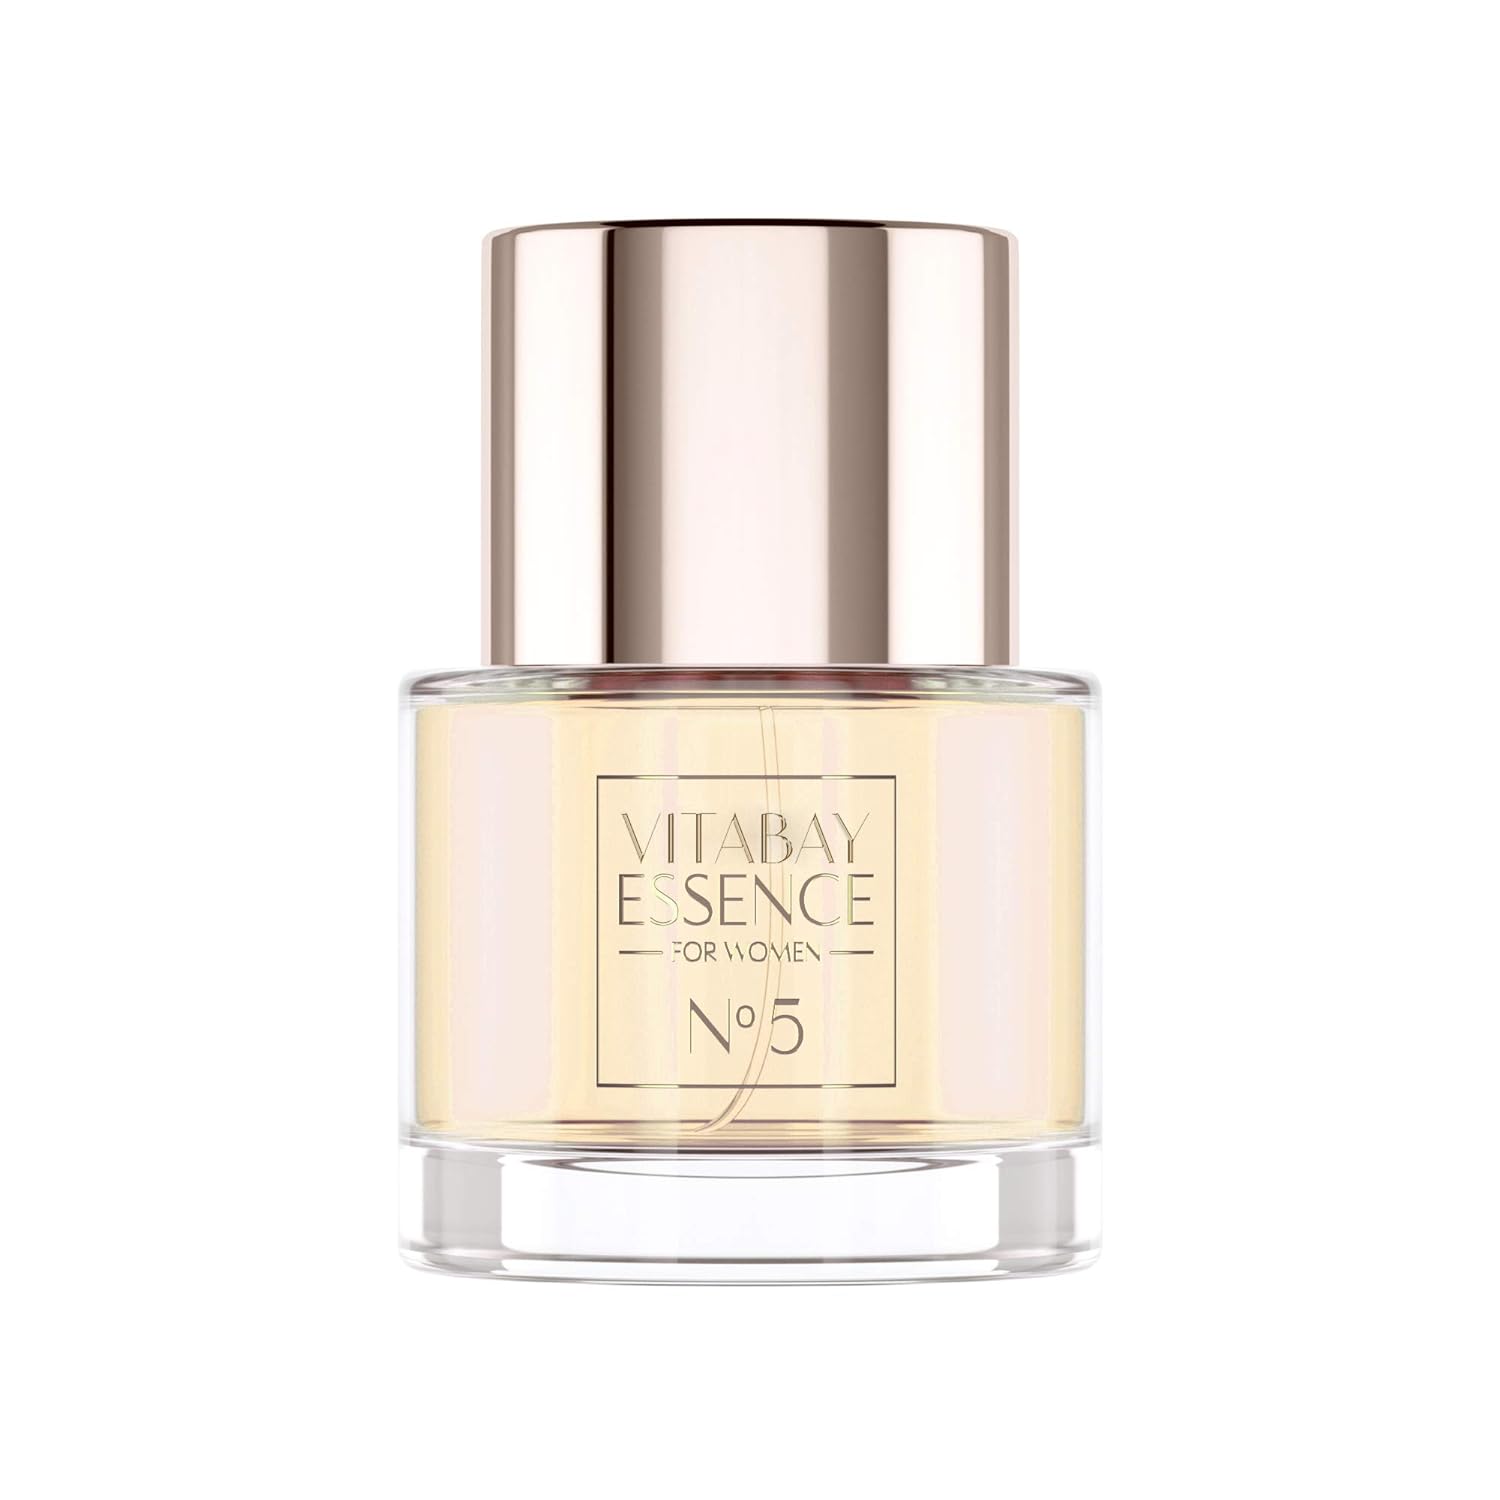 Vitabay Essence Fine Fragrance for Women